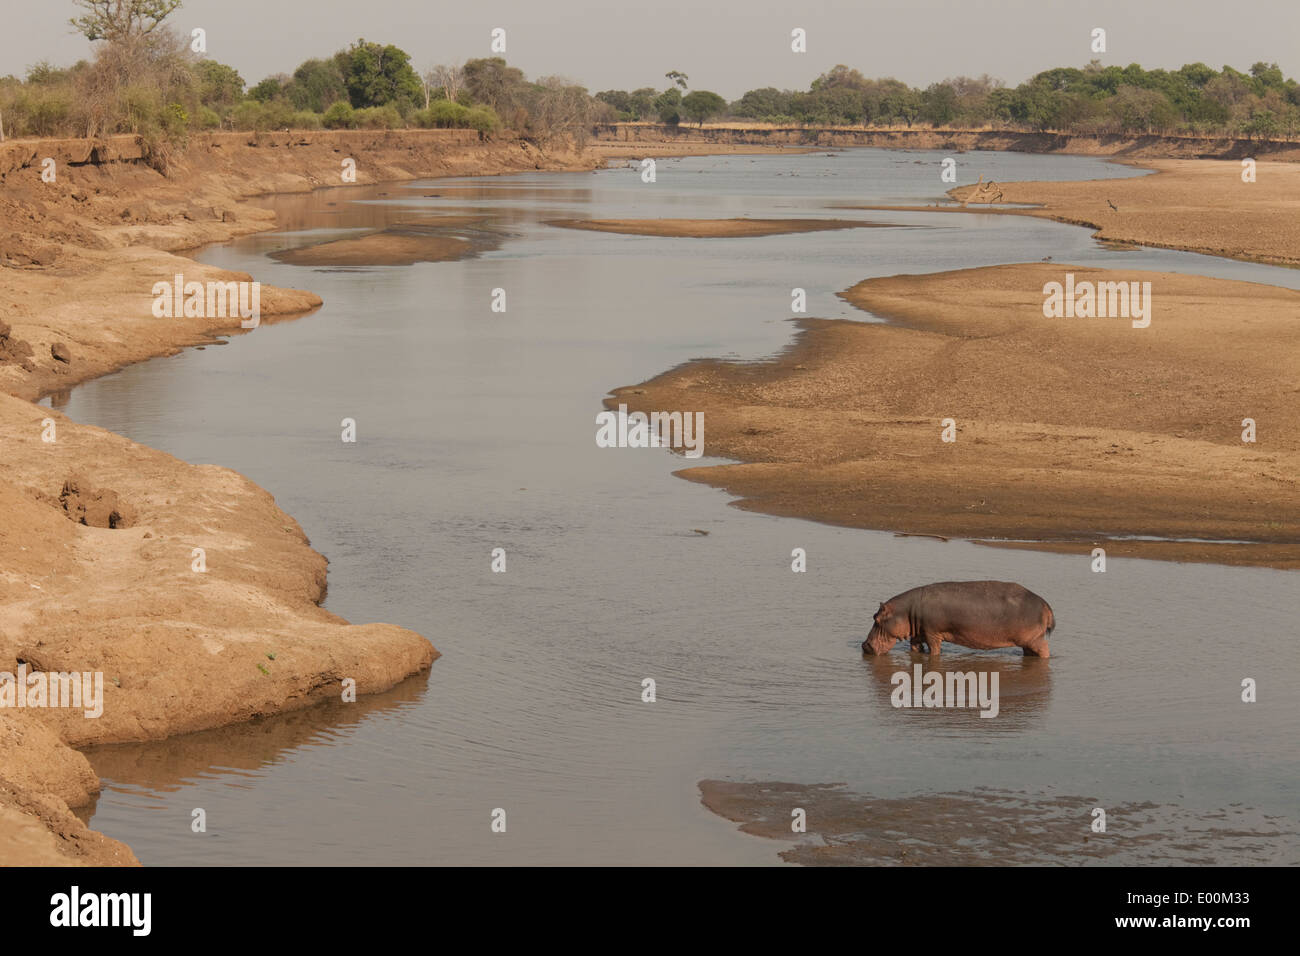 Seul permanent hippopotame Luangwa River saison sèche, bancs de parc national de South Luangwa en Zambie Banque D'Images